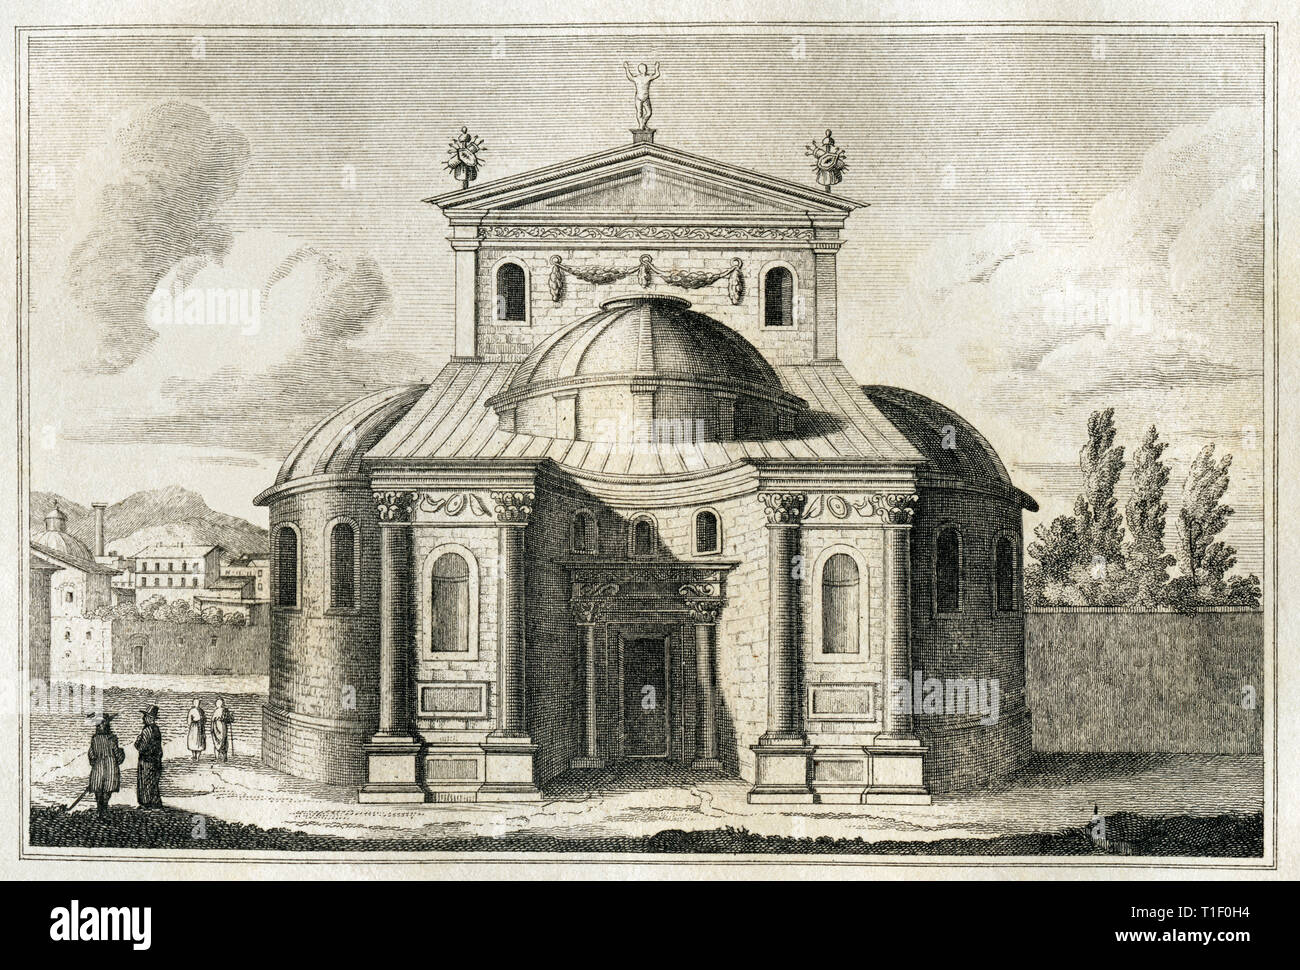 L'Italie, Rome, temple de Romulus, la gravure sur cuivre vers 1840, à partir d'un livre. de l'artiste n'a pas d'auteur pour être effacé Banque D'Images